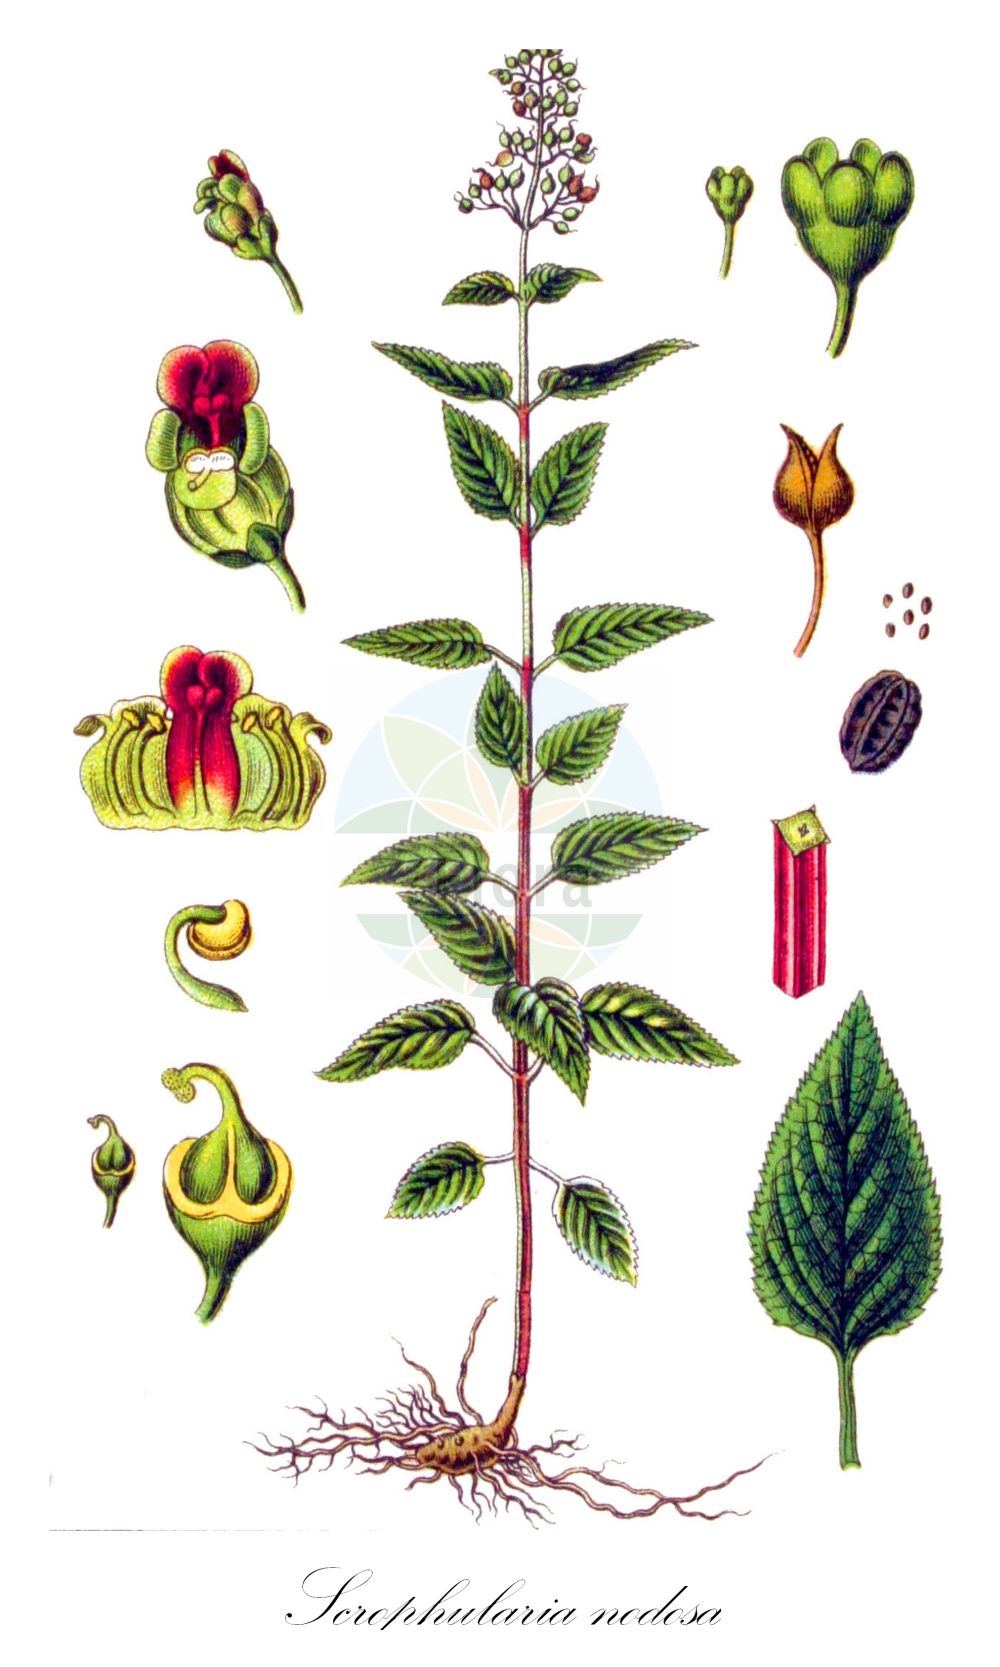 Historische Abbildung von Scrophularia nodosa (Knotige Braunwurz - Common Figwort). Das Bild zeigt Blatt, Bluete, Frucht und Same. ---- Historical Drawing of Scrophularia nodosa (Knotige Braunwurz - Common Figwort). The image is showing leaf, flower, fruit and seed.(Scrophularia nodosa,Knotige Braunwurz,Common Figwort,Scrophularia nodosa,Scrophularia nodosa L. subsp.,Scrophularia nodosa subsp. chamaeneriifolia,Knotige Braunwurz,Common Figwort,Woodland Figwort,Figwort,Kernelwort,Knotted Figwort,Scrophularia,Braunwurz,Figwort,Scrophulariaceae,Braunwurzgewächse,Figwort family,Blatt,Bluete,Frucht,Same,leaf,flower,fruit,seed,Sturm (1796f))